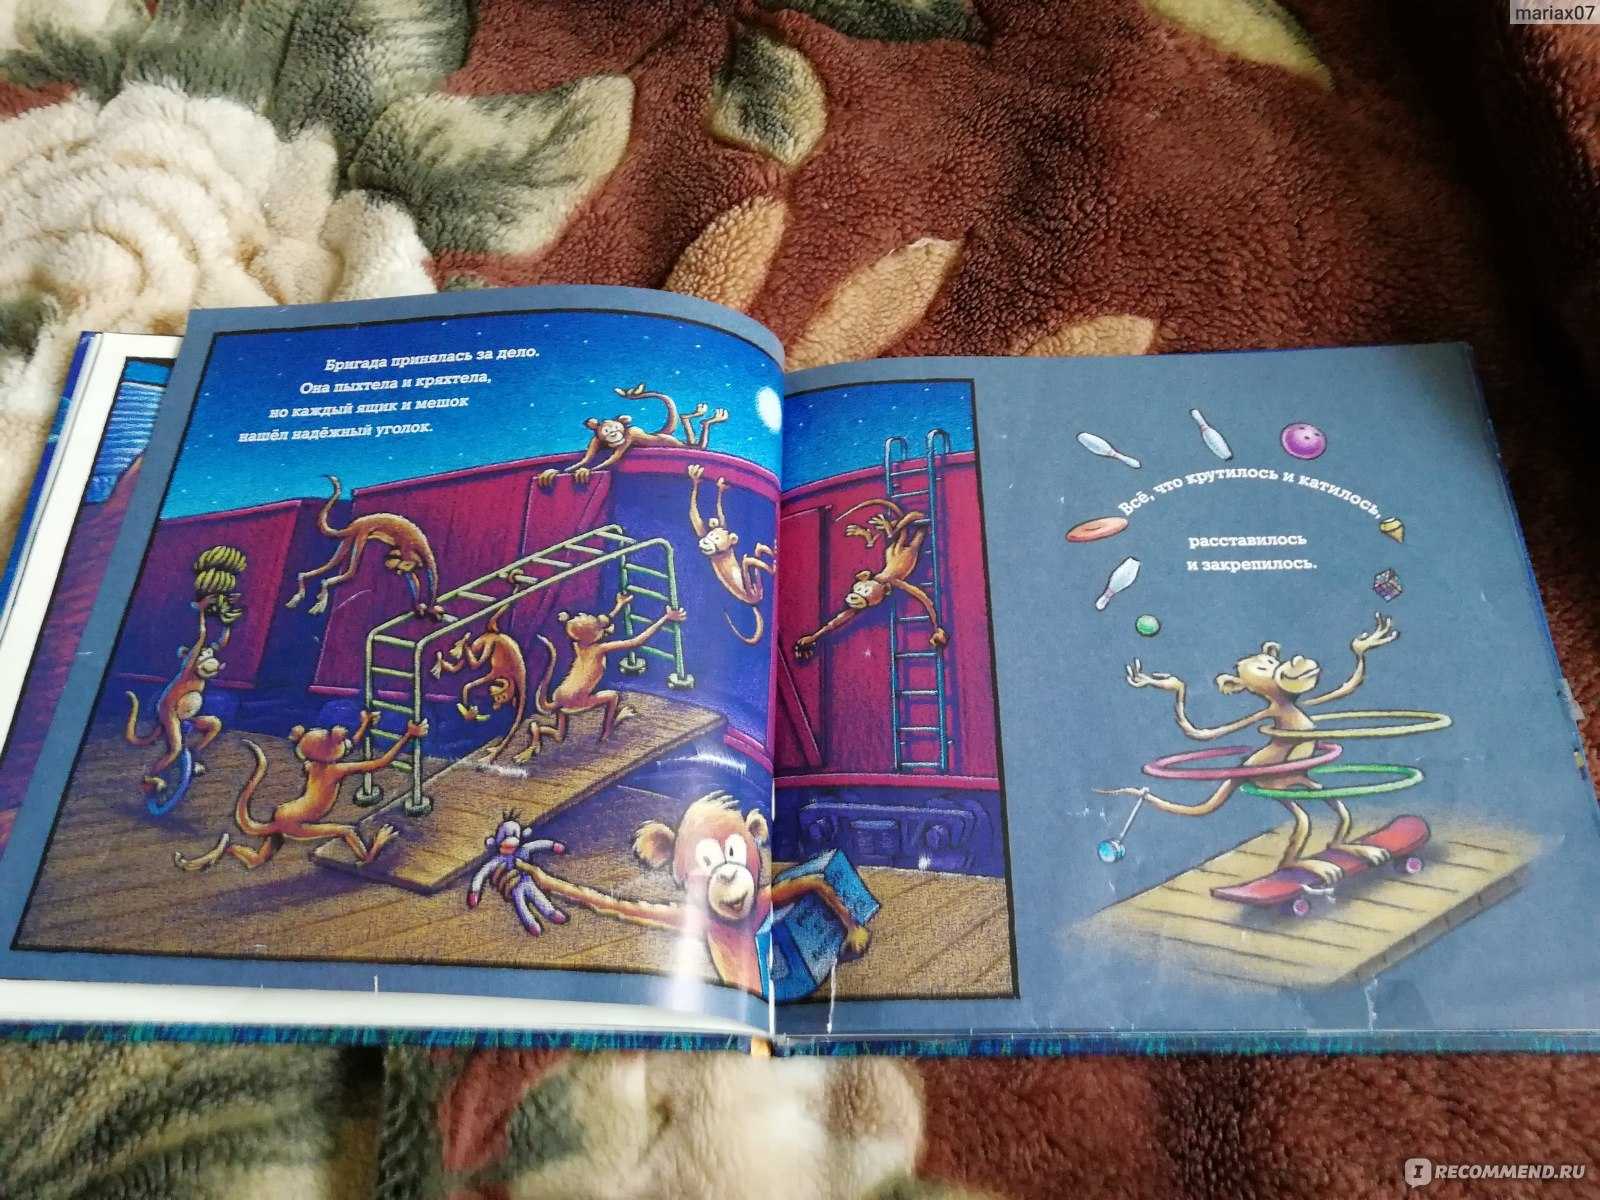 Книги для детей 2-3 лет: обзор 30-ти художественных произведения и развивающих пособий для малышей